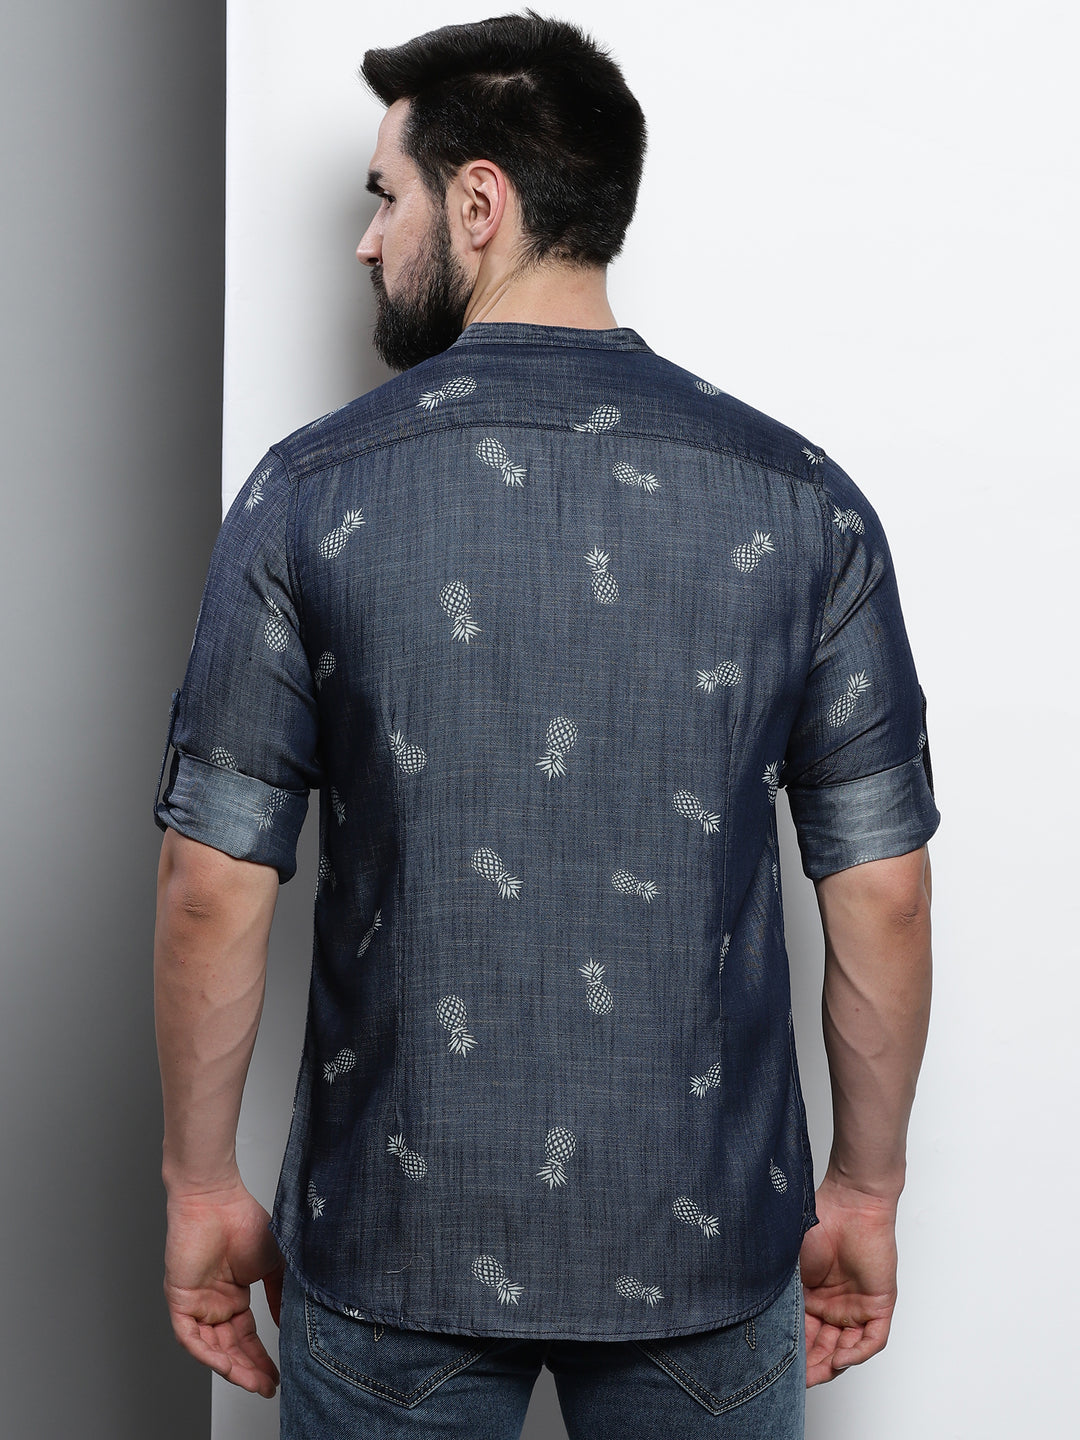 Pineapple Print Denim Shirt